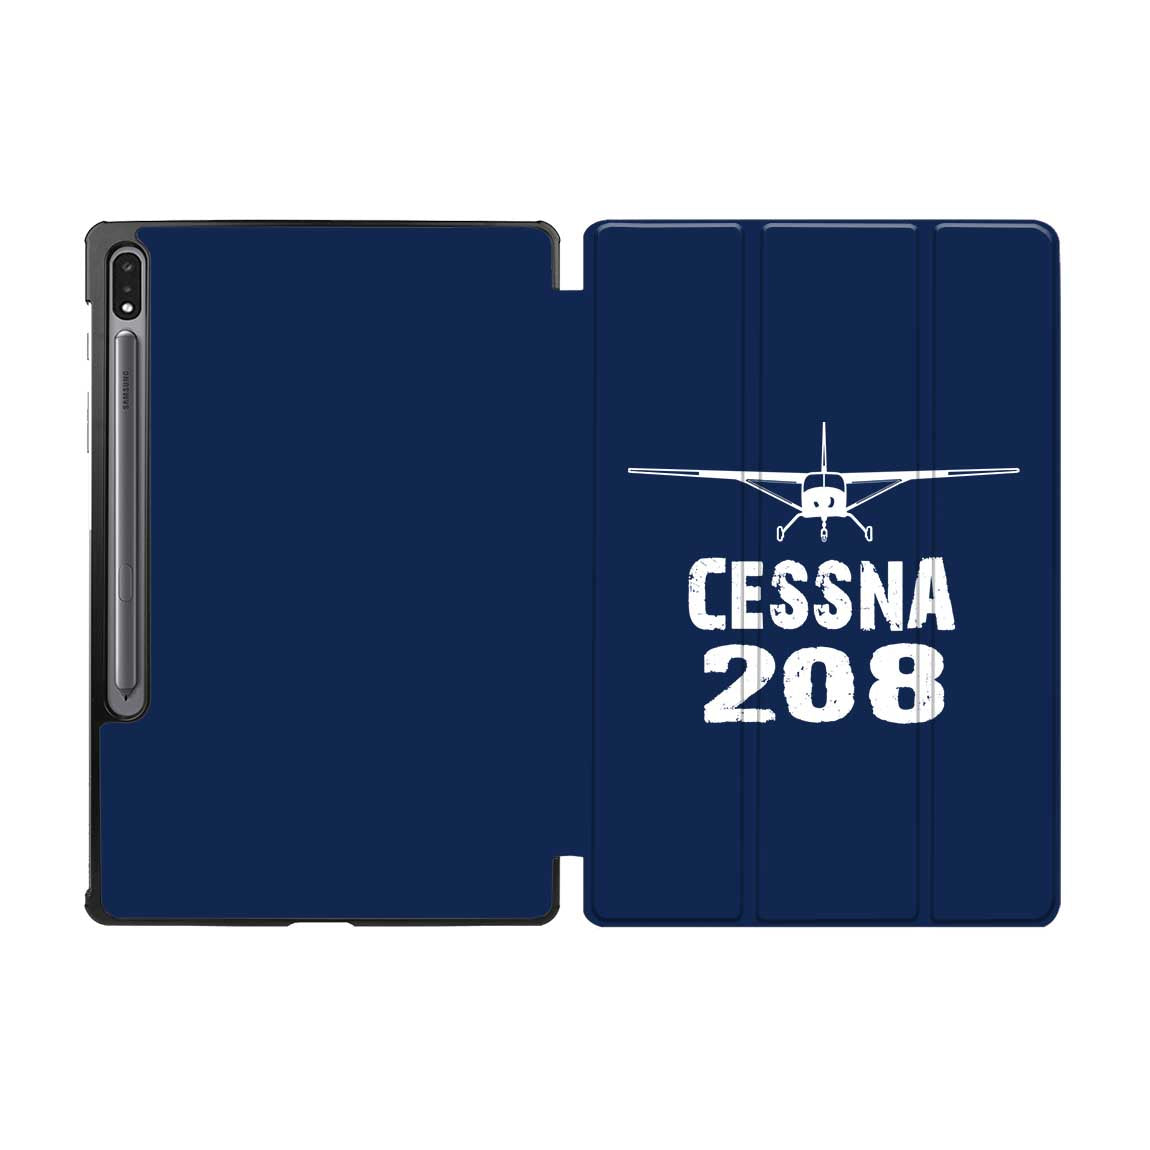 Cessna 208 & Plane Designed Samsung Tablet Cases